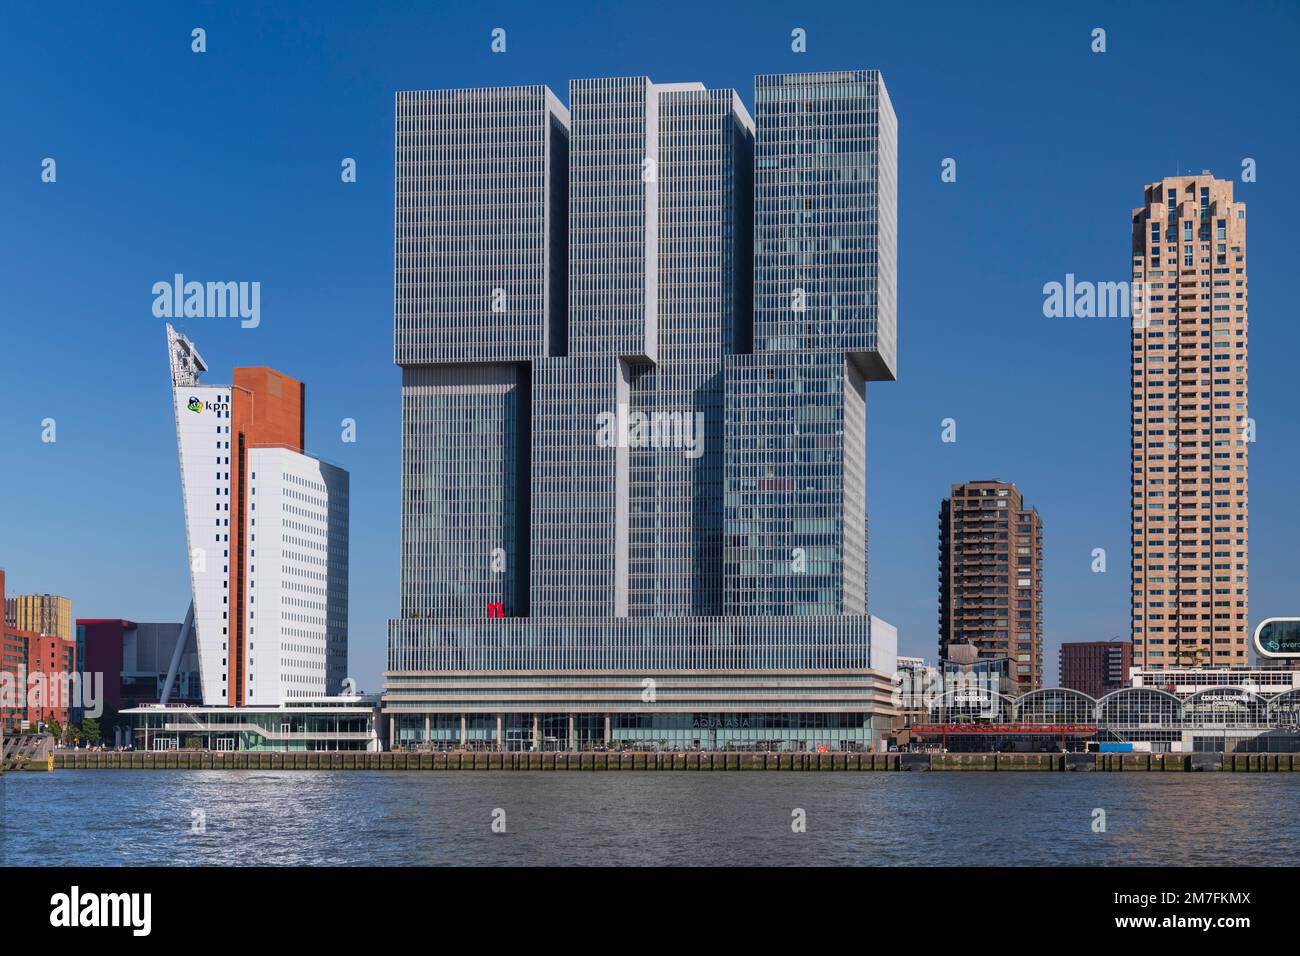 Hollande, Rotterdam, la rivière Nieuwe Maas avec le bâtiment de Rotterdam au centre, flanqué par le bâtiment KPN Telecom Tower sur la gauche et la tour de la Nouvelle-Orléans sur la droite. Banque D'Images